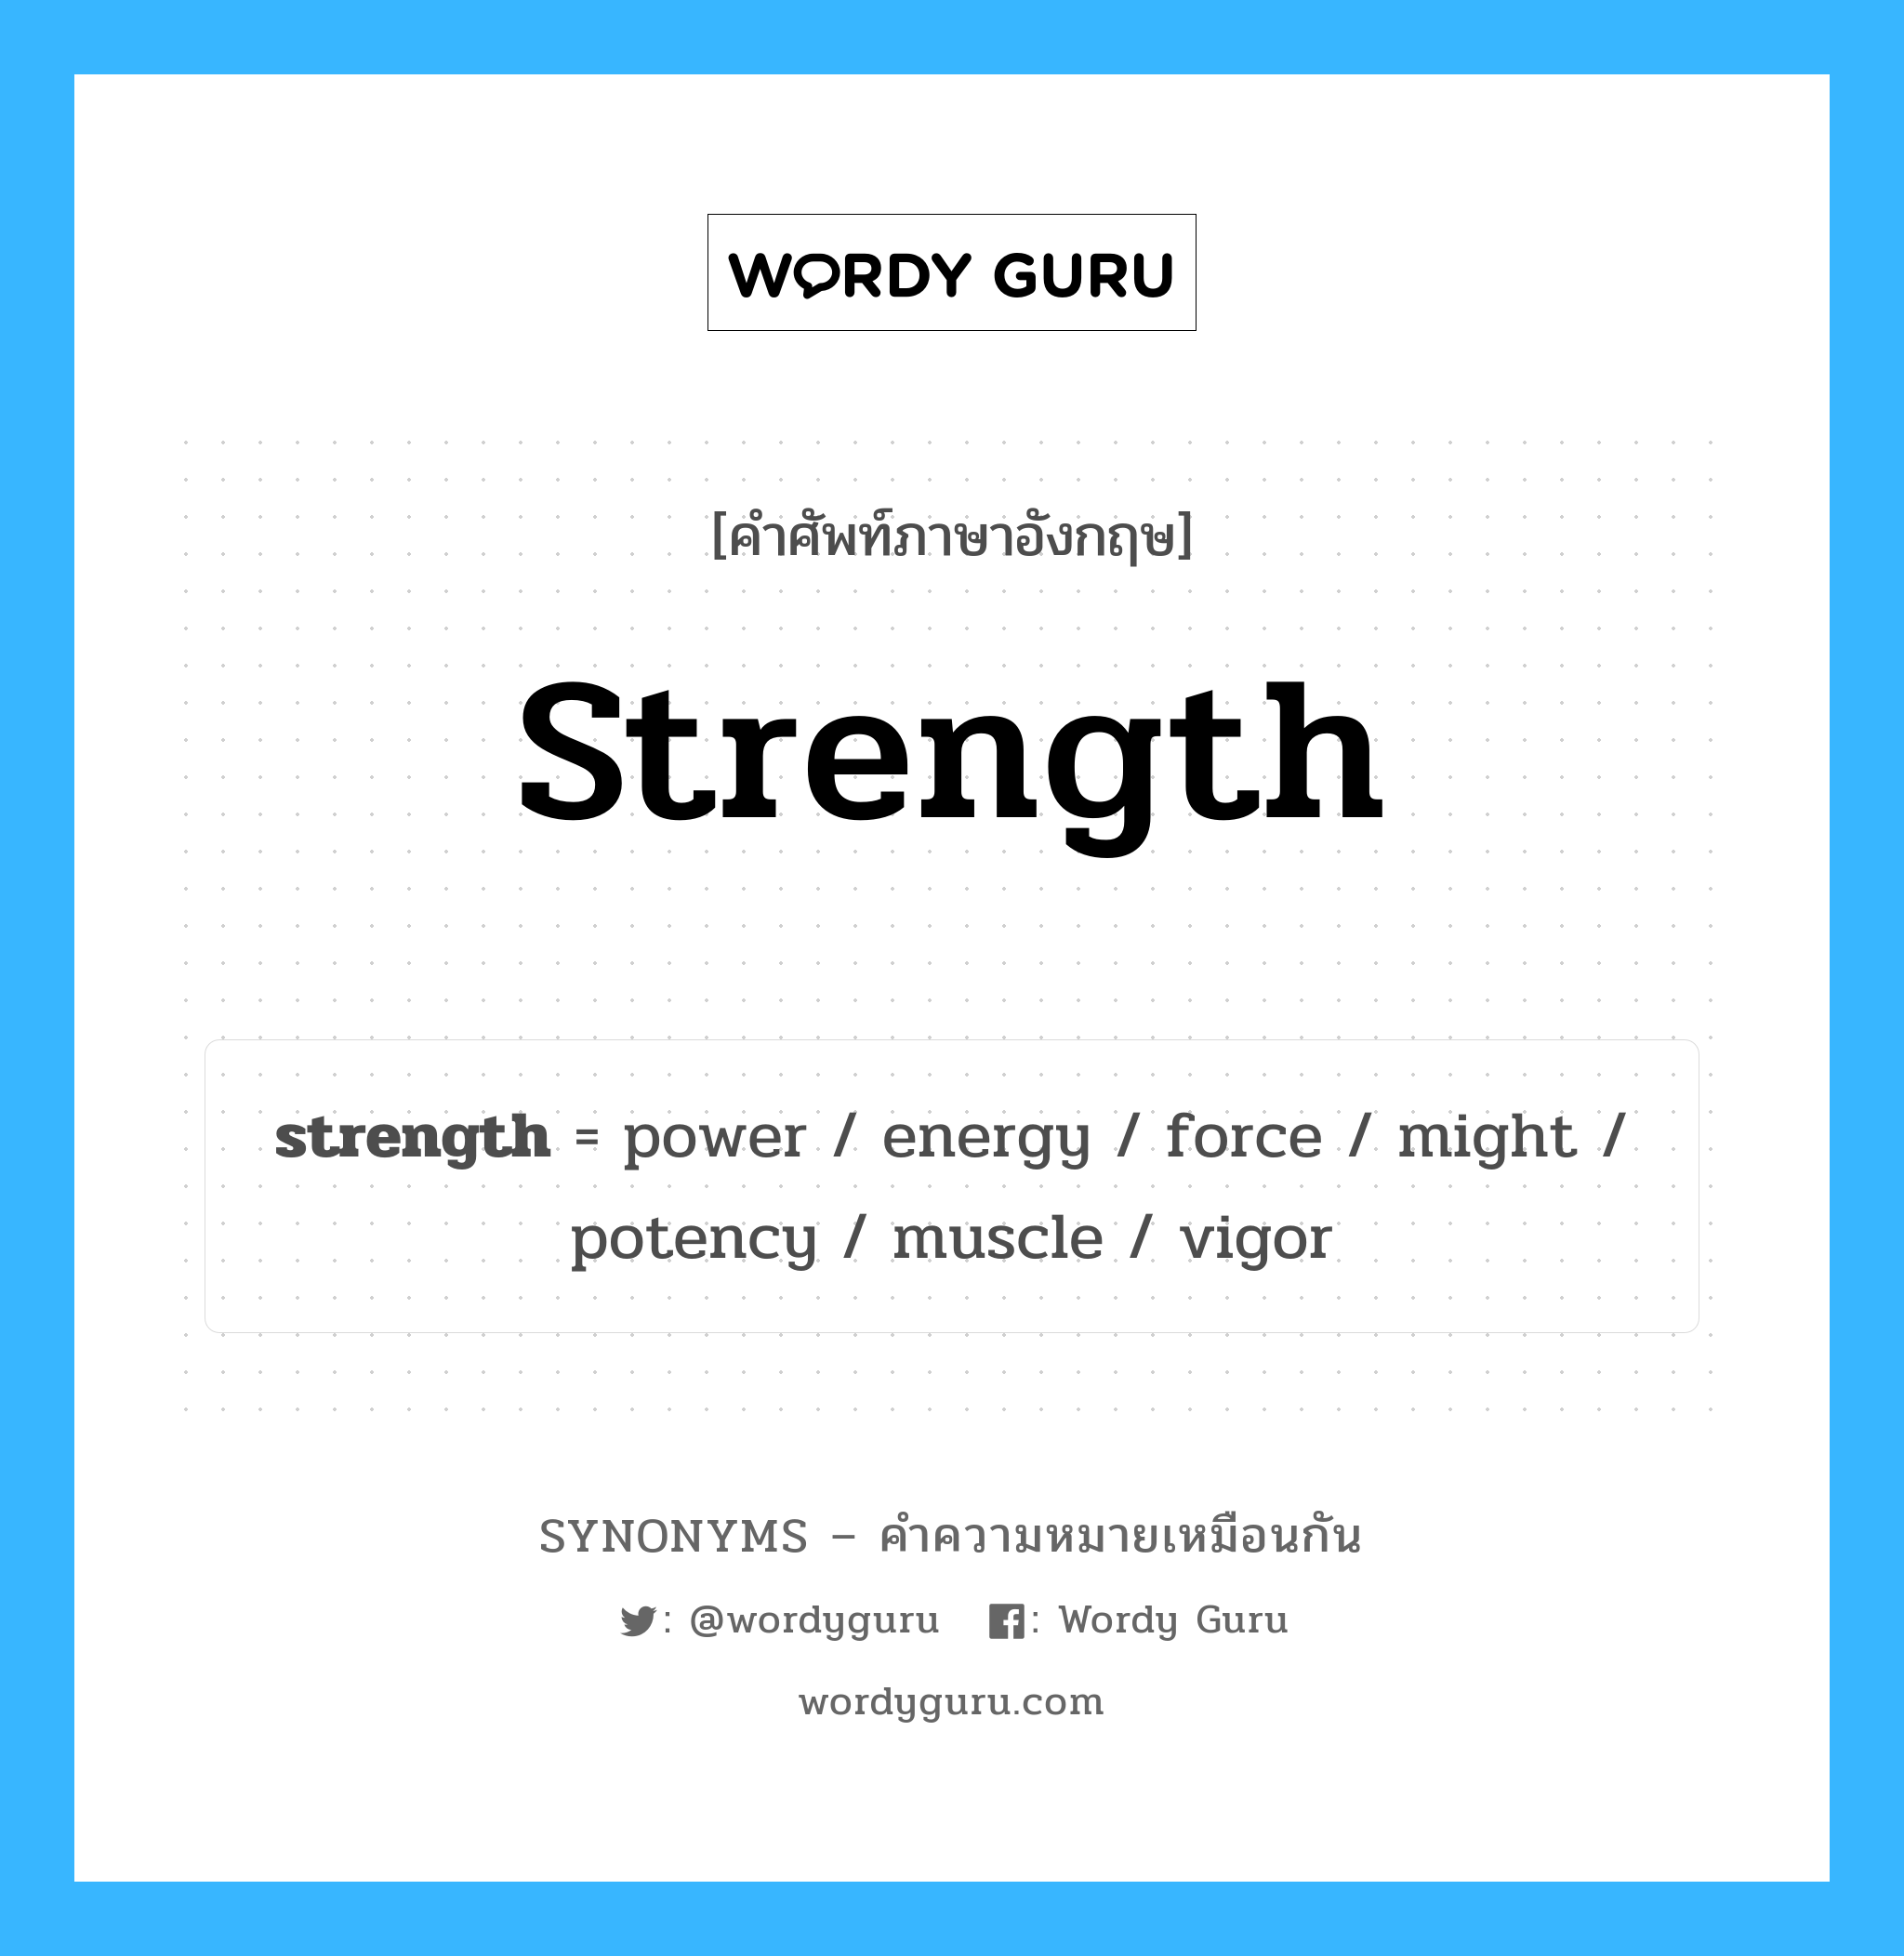 energy เป็นหนึ่งใน strength และมีคำอื่น ๆ อีกดังนี้, คำศัพท์ภาษาอังกฤษ energy ความหมายคล้ายกันกับ strength แปลว่า พลังงาน หมวด strength